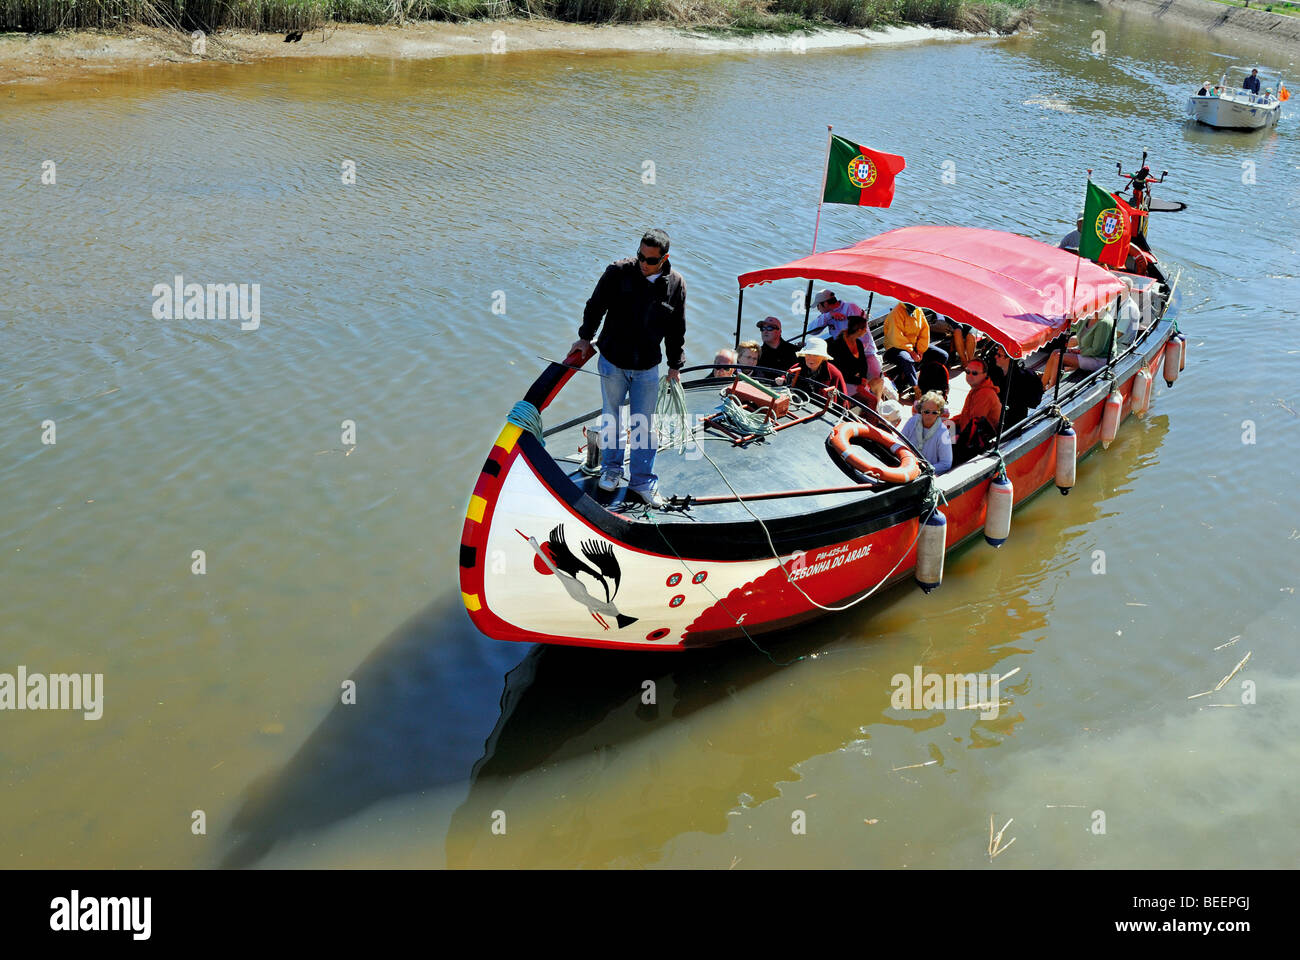 Il Portogallo, Algarve: Excrsion barca con i turisti presso il fiume Arado in Silves Foto Stock